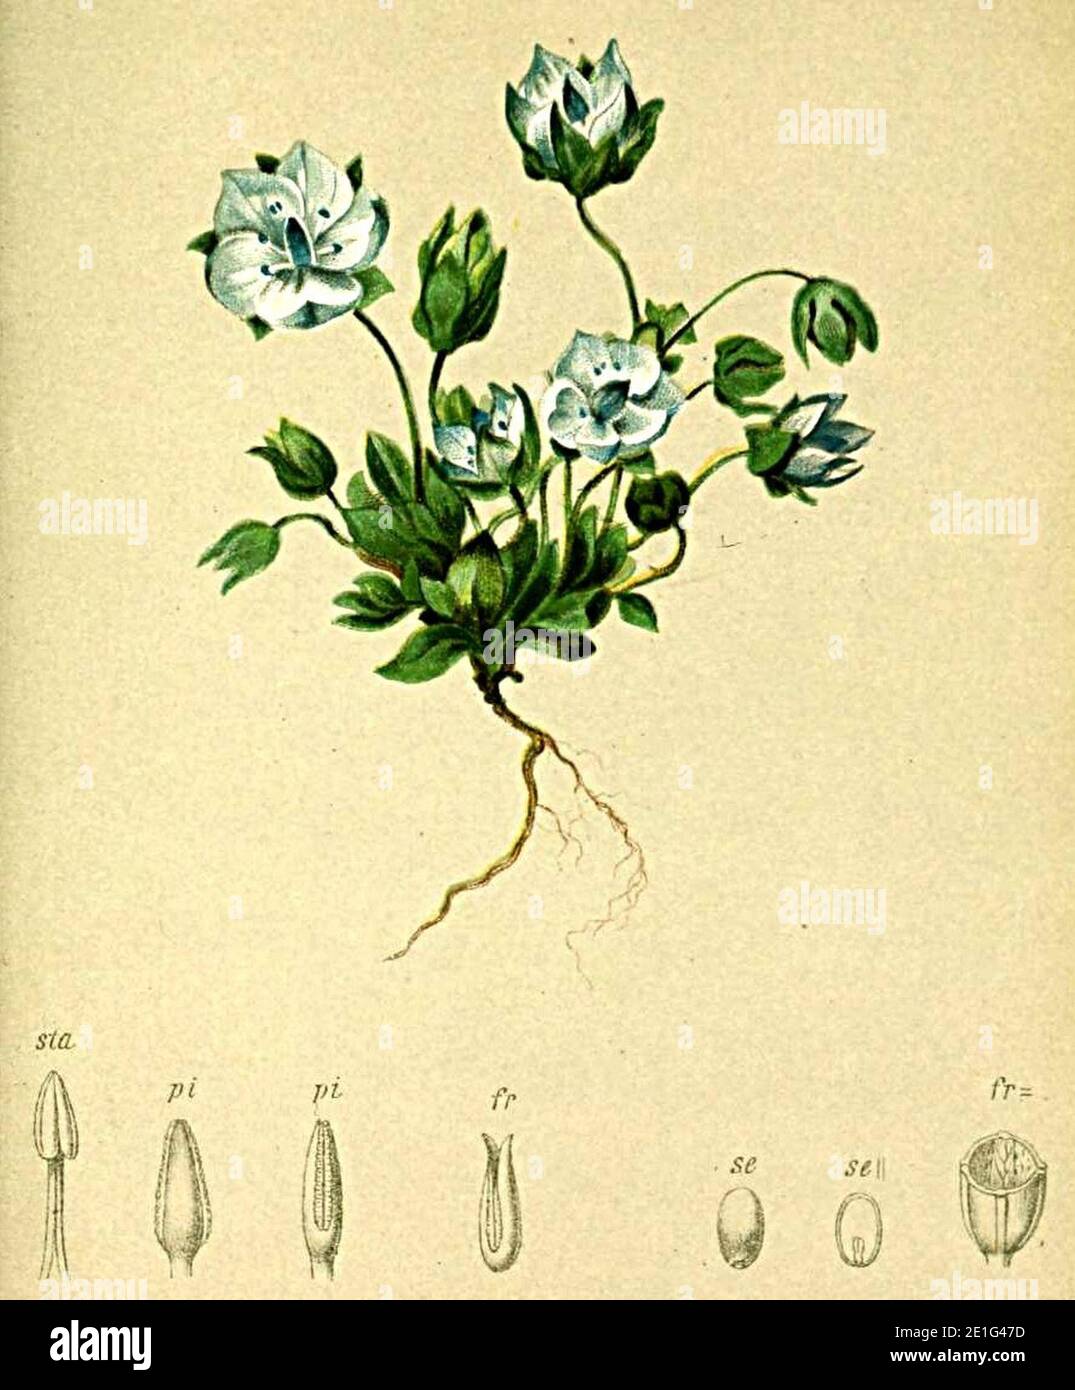 Lomatogonium carinthiacum Atlas Alpenflora. Stock Photo